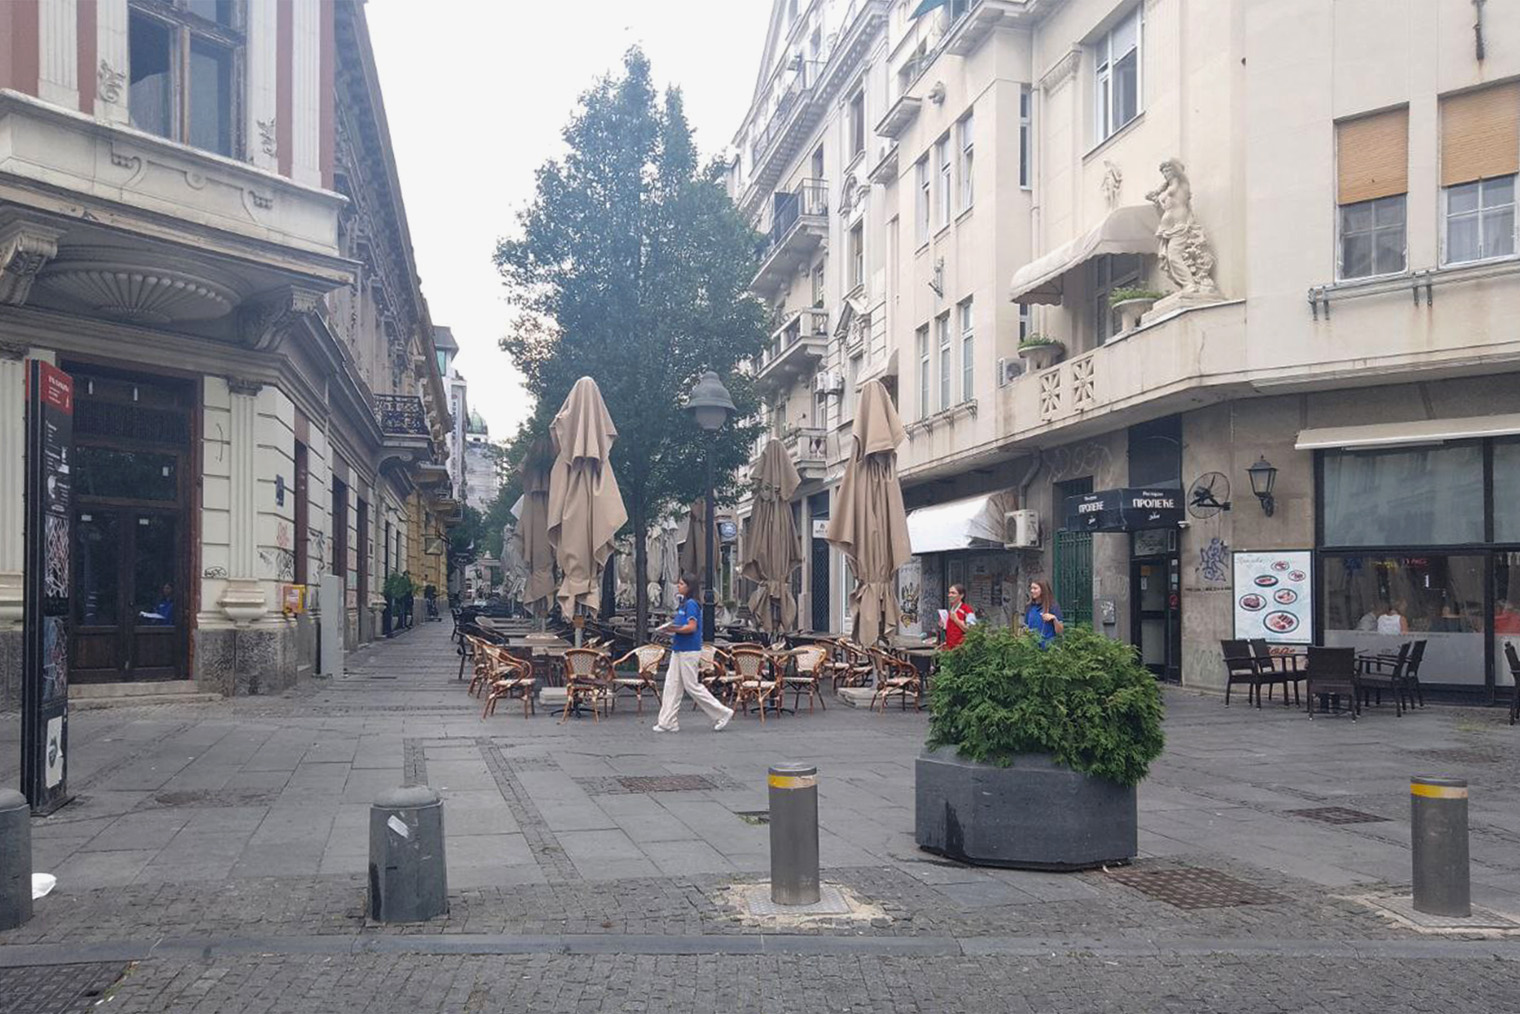 В центре Белграда приятно, но шумно. Поэтому мы решили поселиться в спальном районе